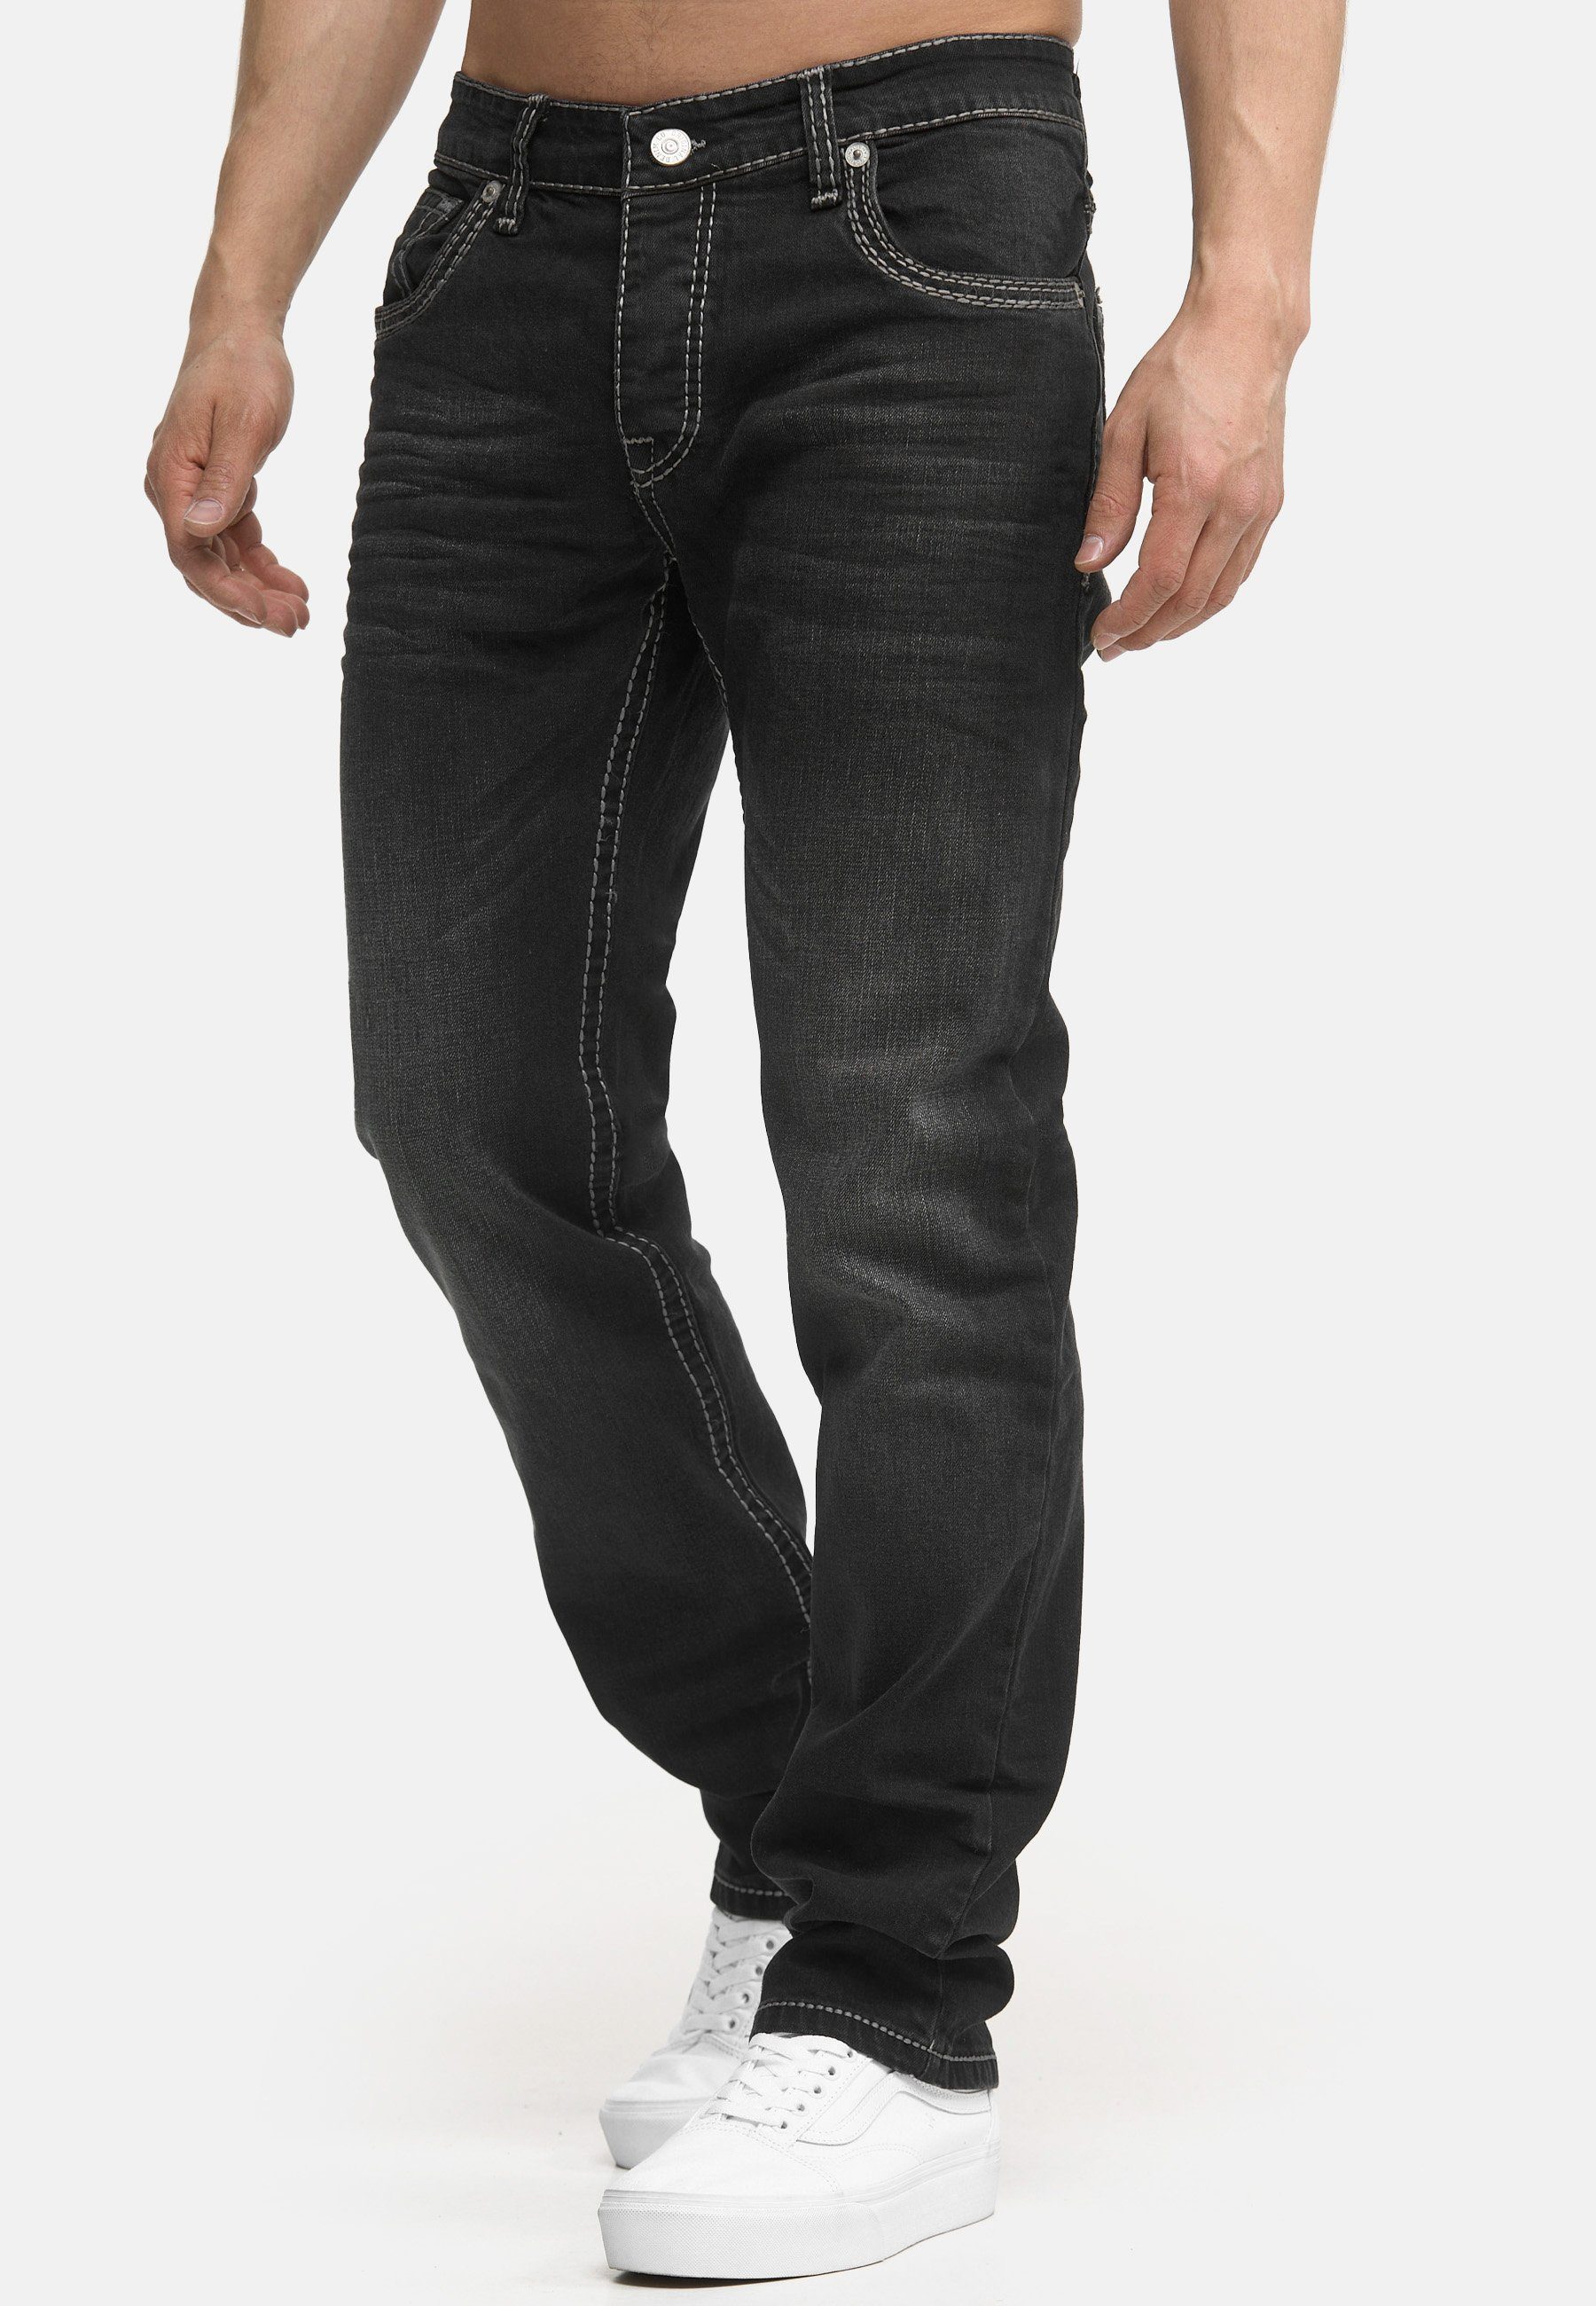 Regular-fit-Jeans Code47 Pocket Fit Denim Männer 902 light Regular Hose black Bootcut Herren Jeans Five Code47